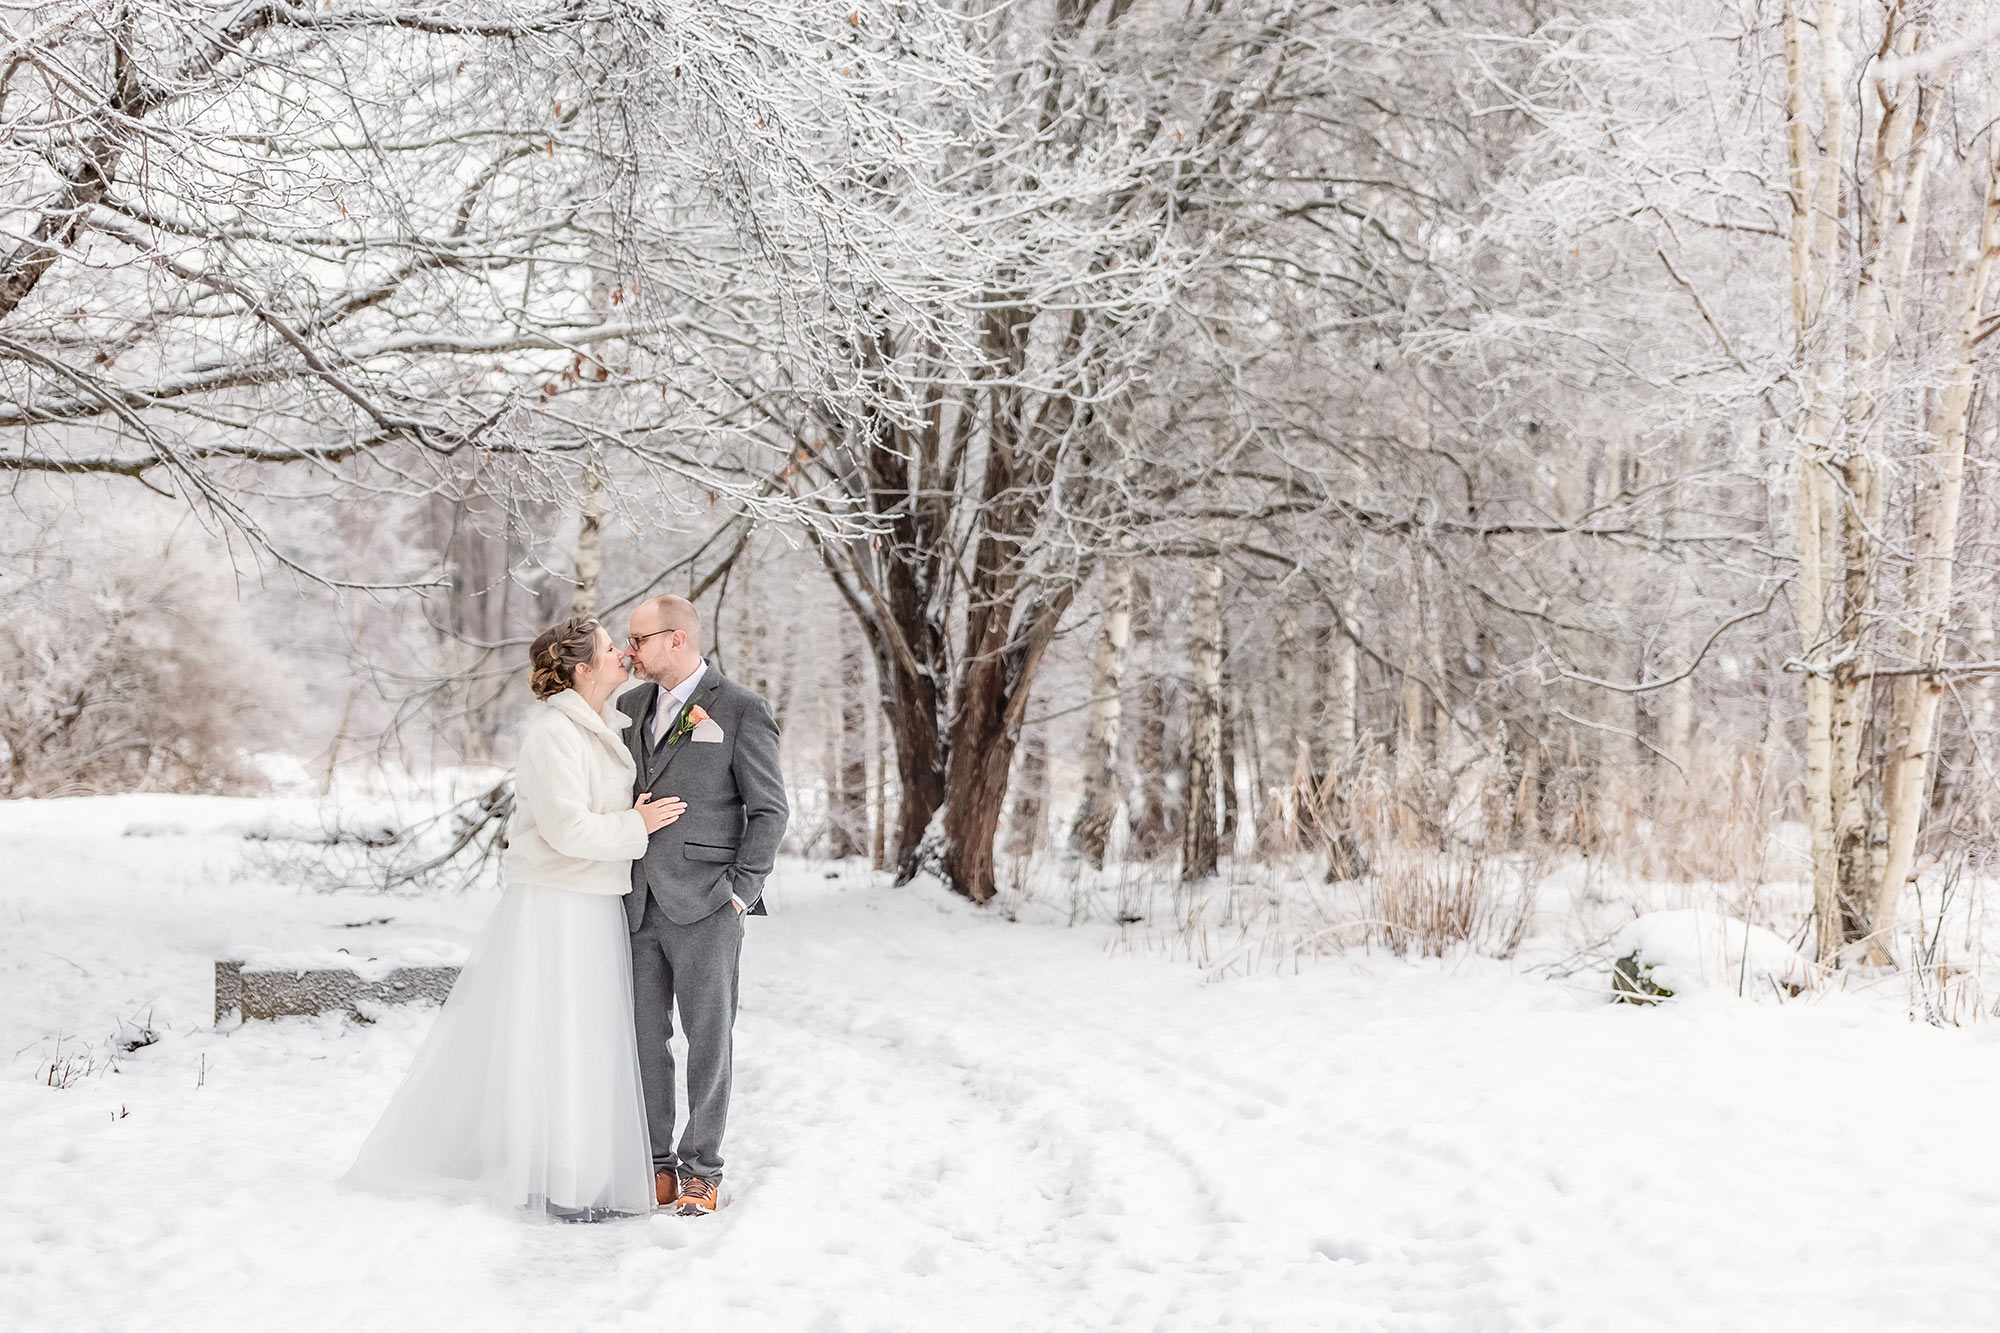 Bröllopspar står i ett snötäckt landskap där snön ligger tjock på trädgrenarna.